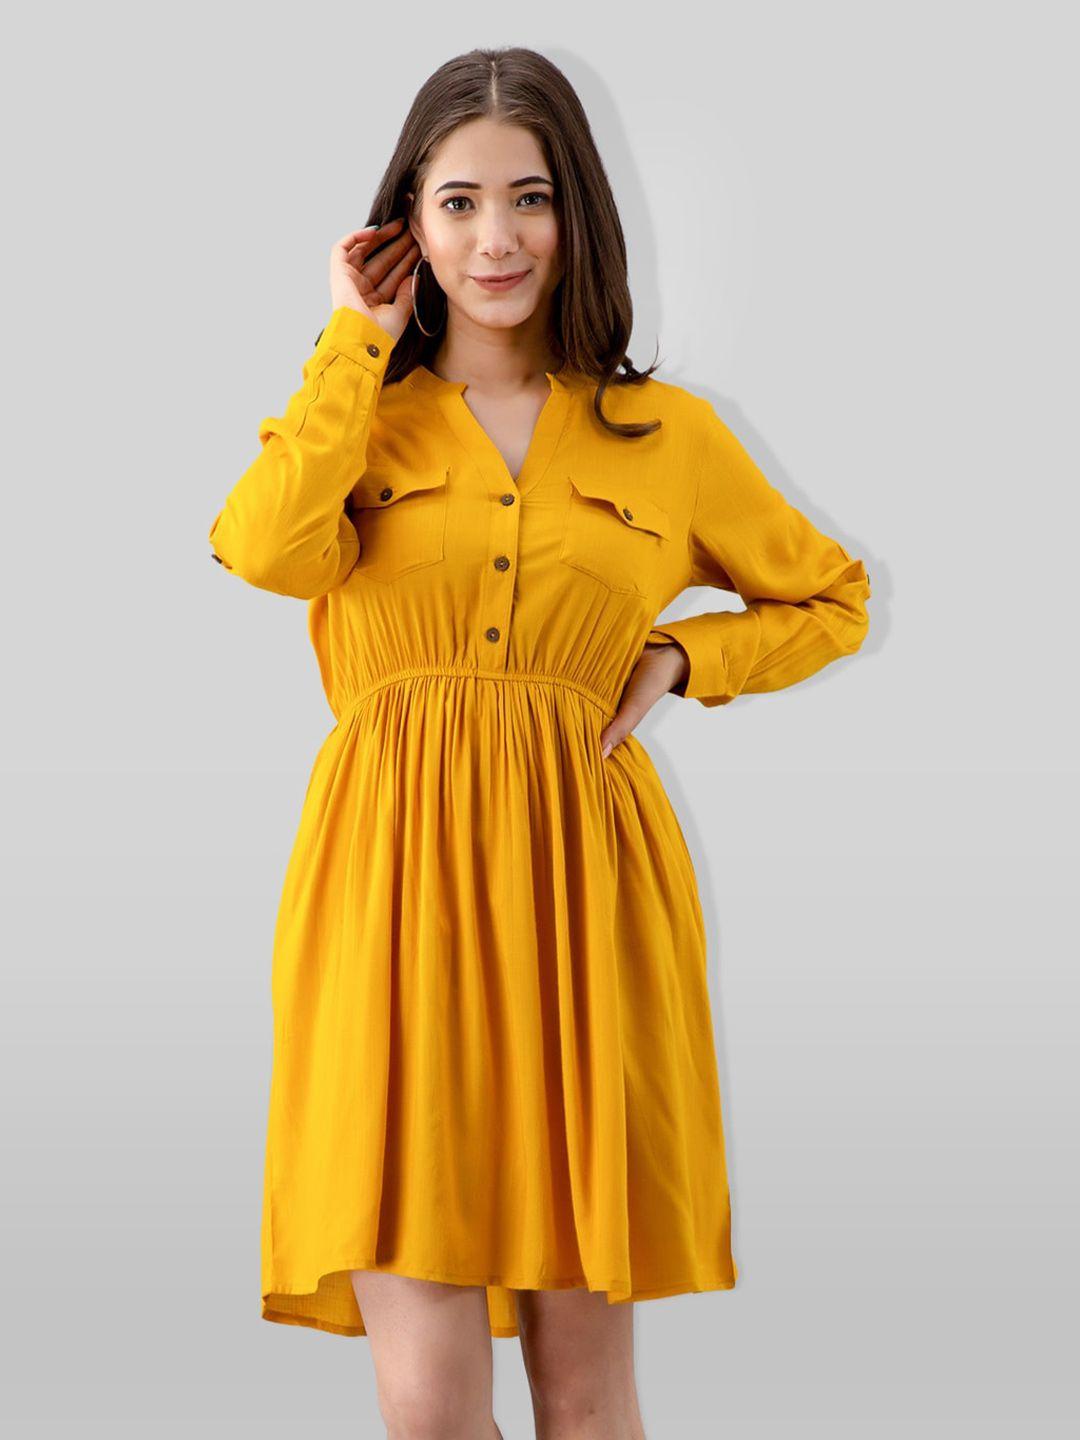 pretty loving thing yellow dress